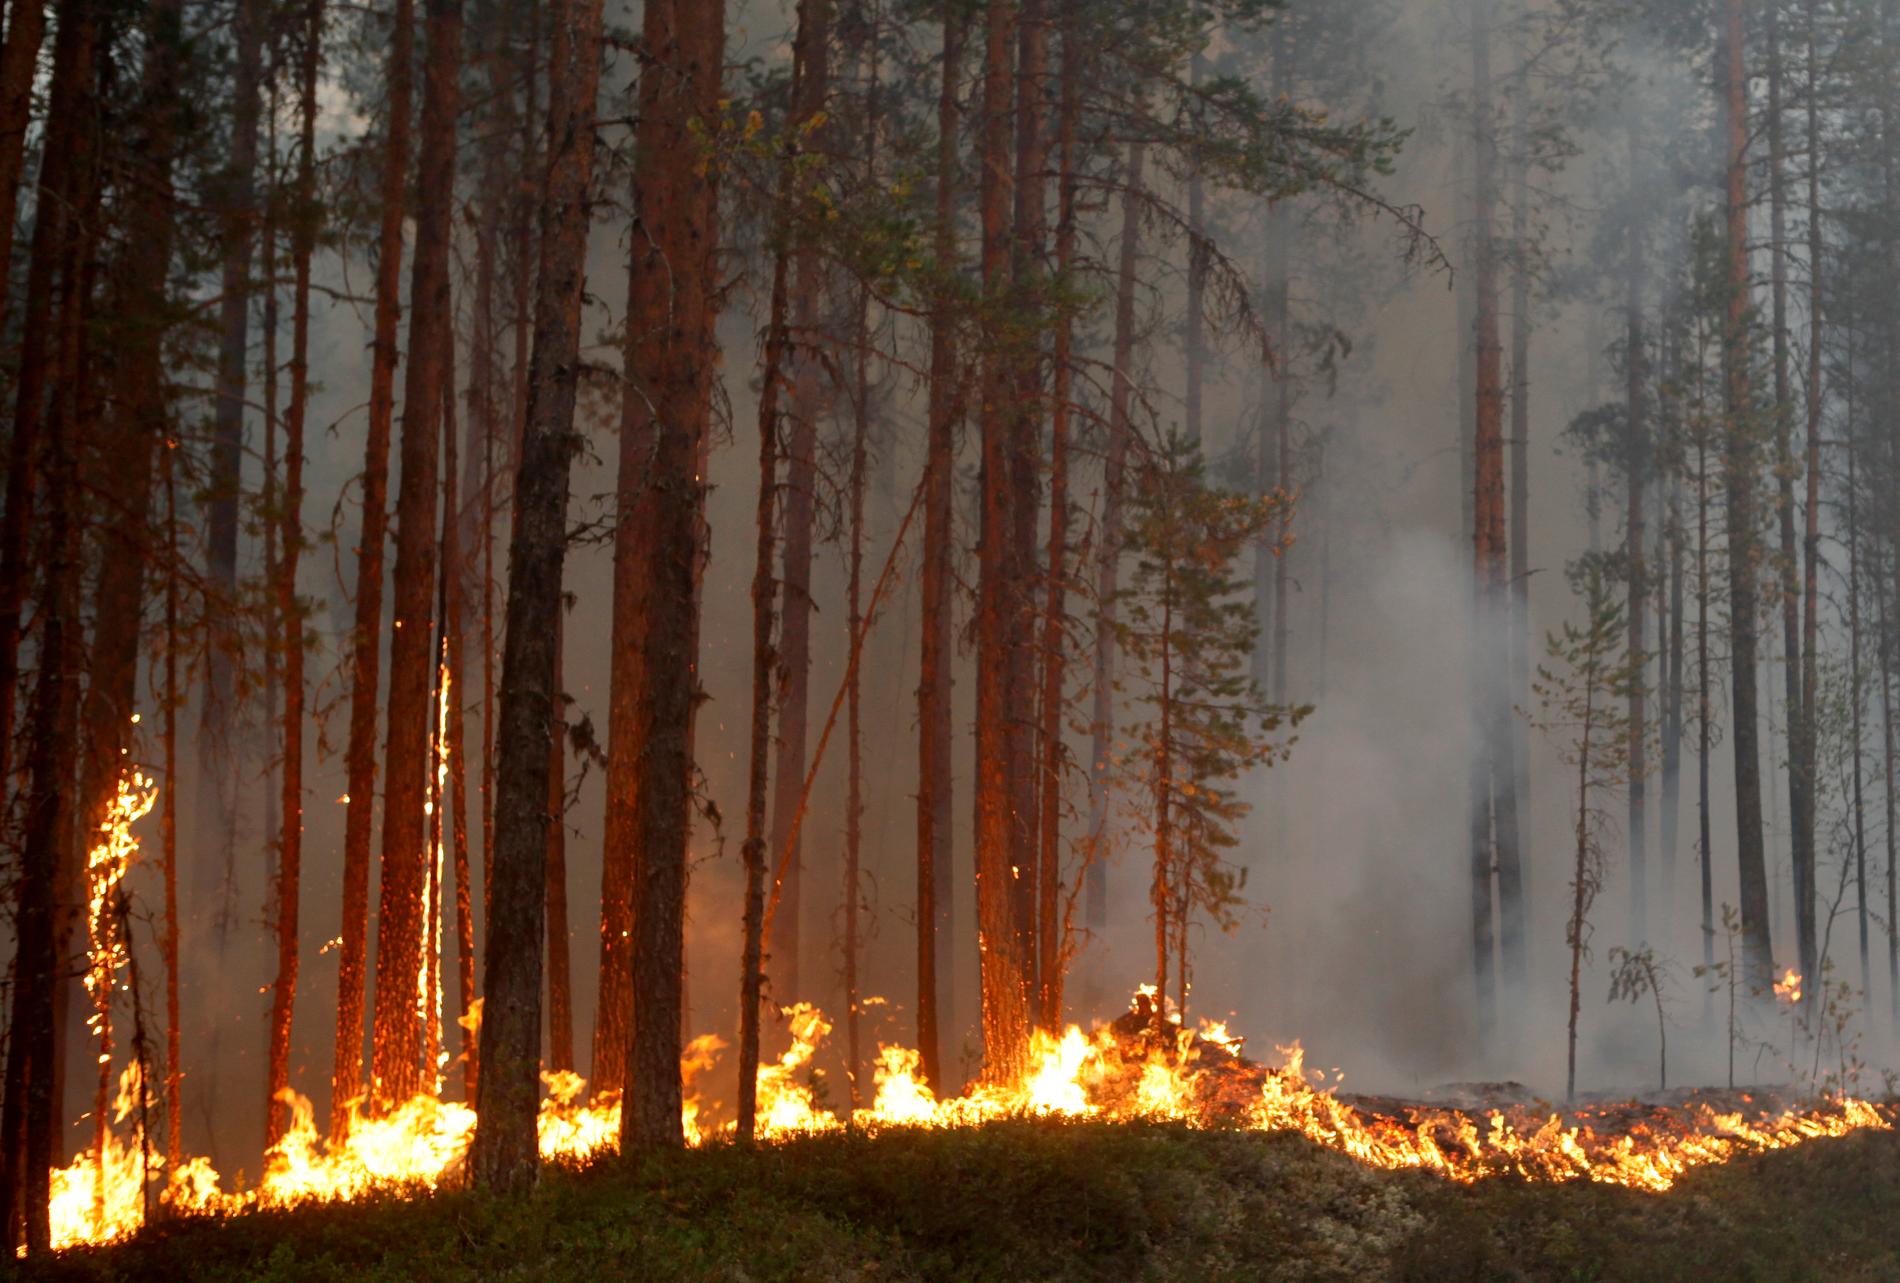 Räddningstjänsten rasar mot dem som trots eldningsförbud byggde en egen grill i skogen. Nu är de anmälda för försök till mordbrand. (Bilden från branden i Kårböle utanför Ljusdal.)